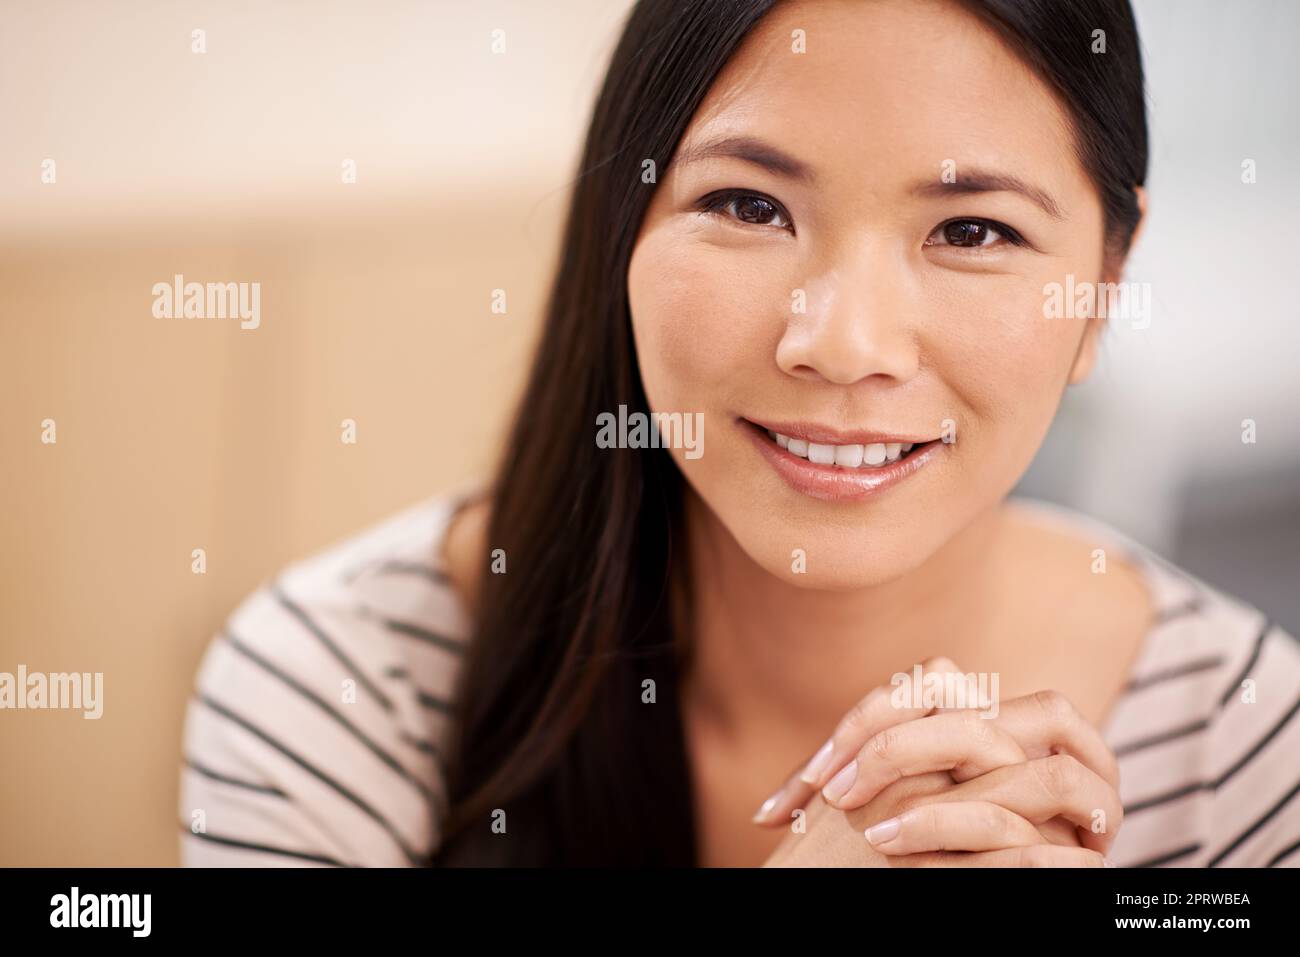 Behalten Sie Ihre Karriere im Auge. Eine selbstbewusste junge asiatische Geschäftsfrau, die die Kamera anschaut. Stockfoto